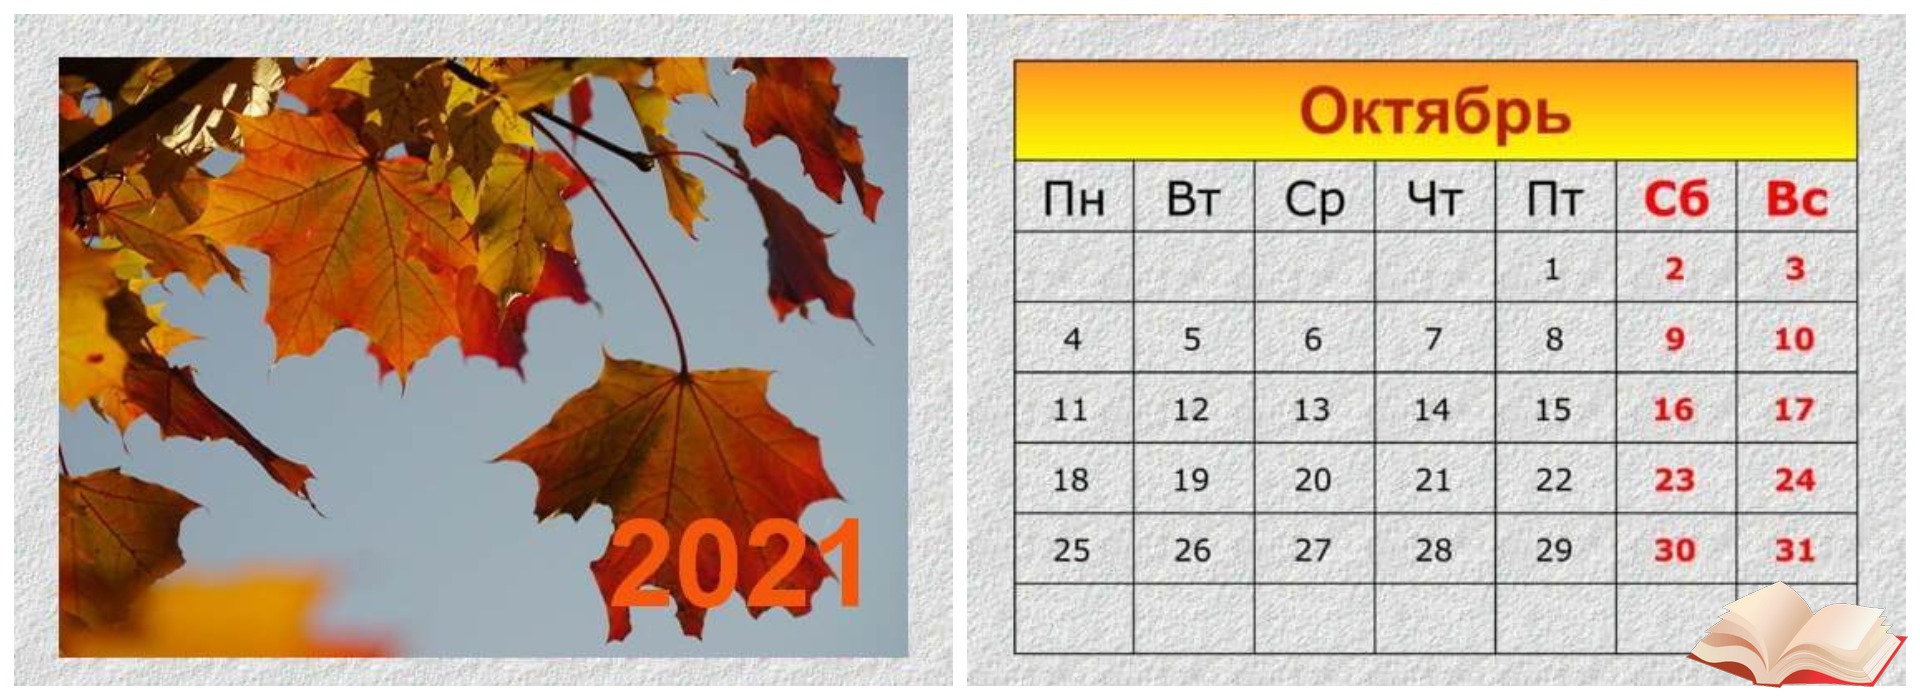 01 октября 2023 года. Календарик октябрь. Страницы календаря октябрь. 1 Октября календарь. Красочный календарь на октябрь.